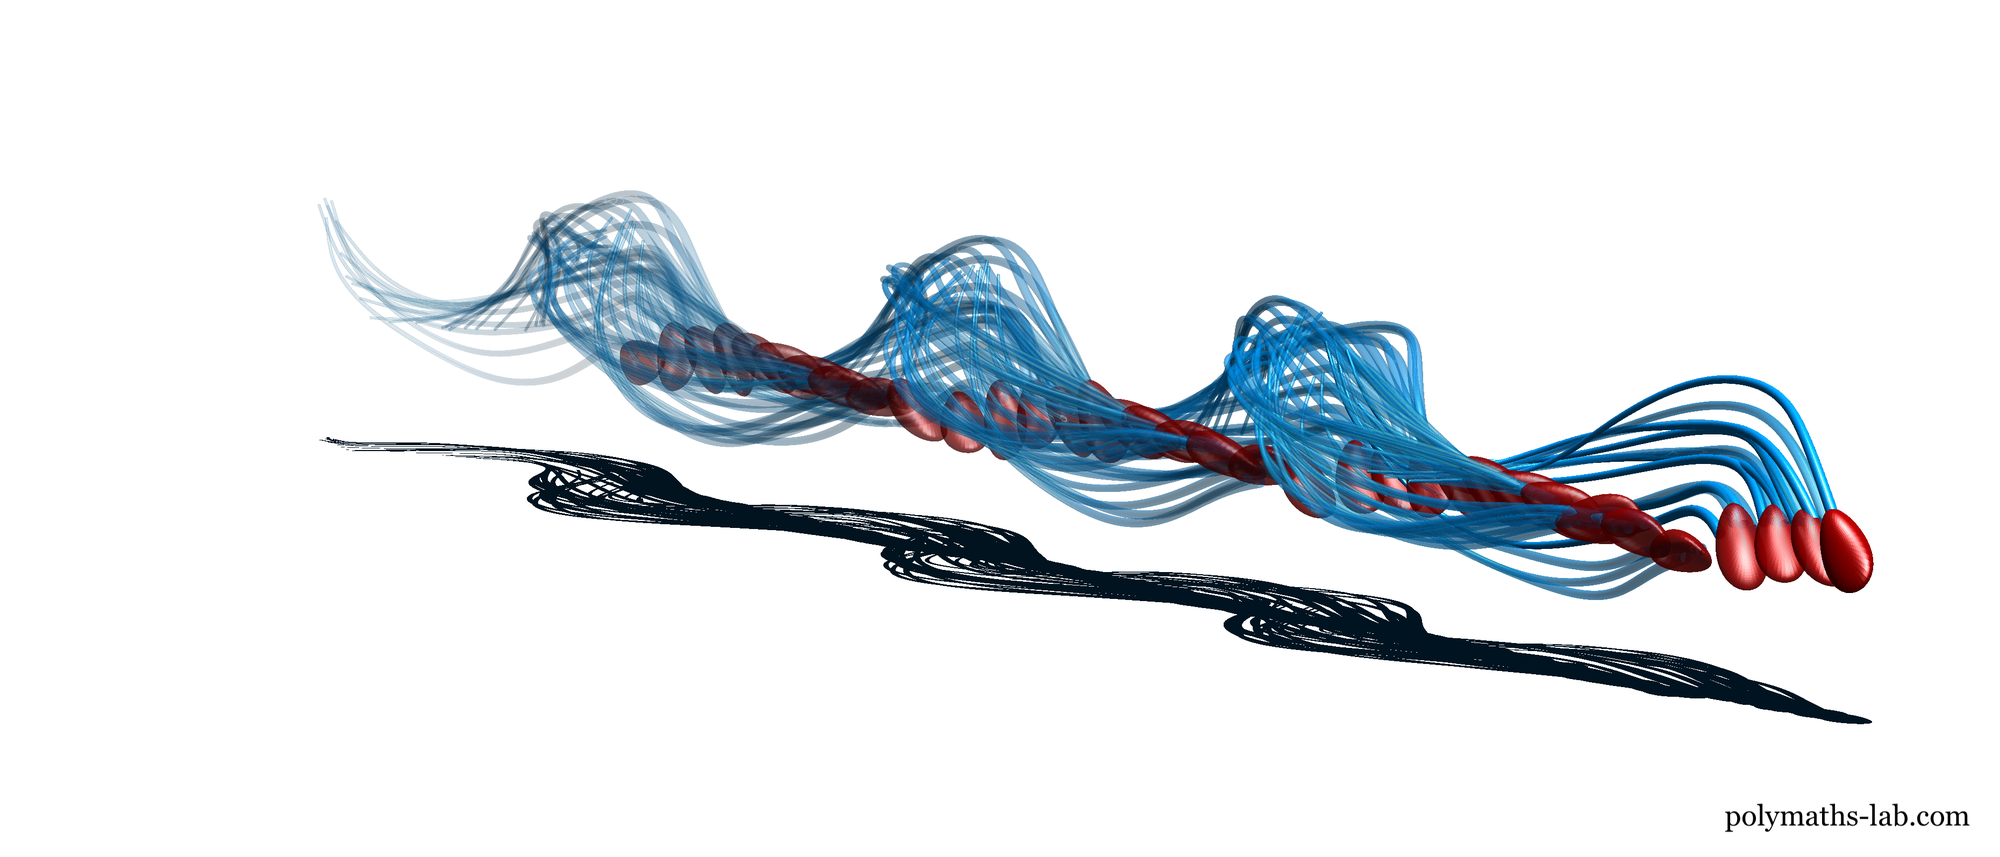 Illustration eines menschlichen Spermiums, dass sich ähnlich einem Korkenzieher bewegt